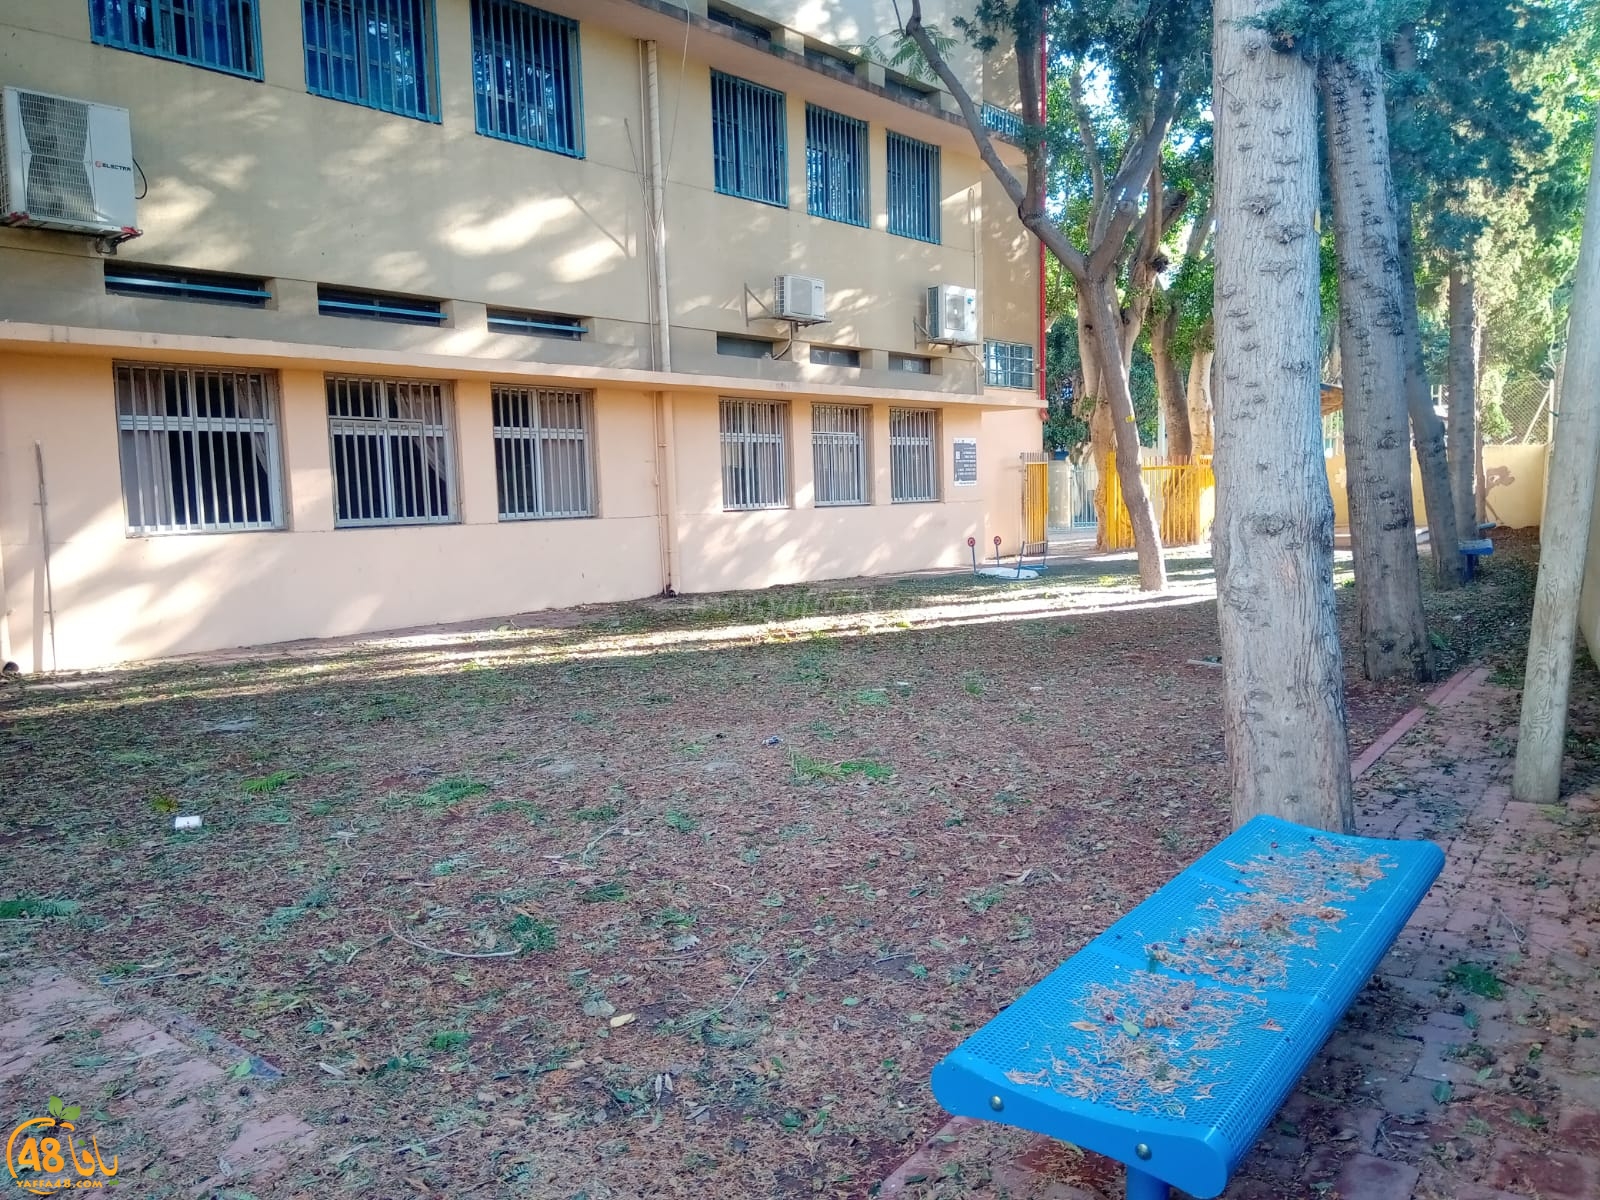  مع افتتاح العام الدراسي - لا ننس .. مرور عامين على اغلاق مدرسة الزهراء التاريخية بيافا 